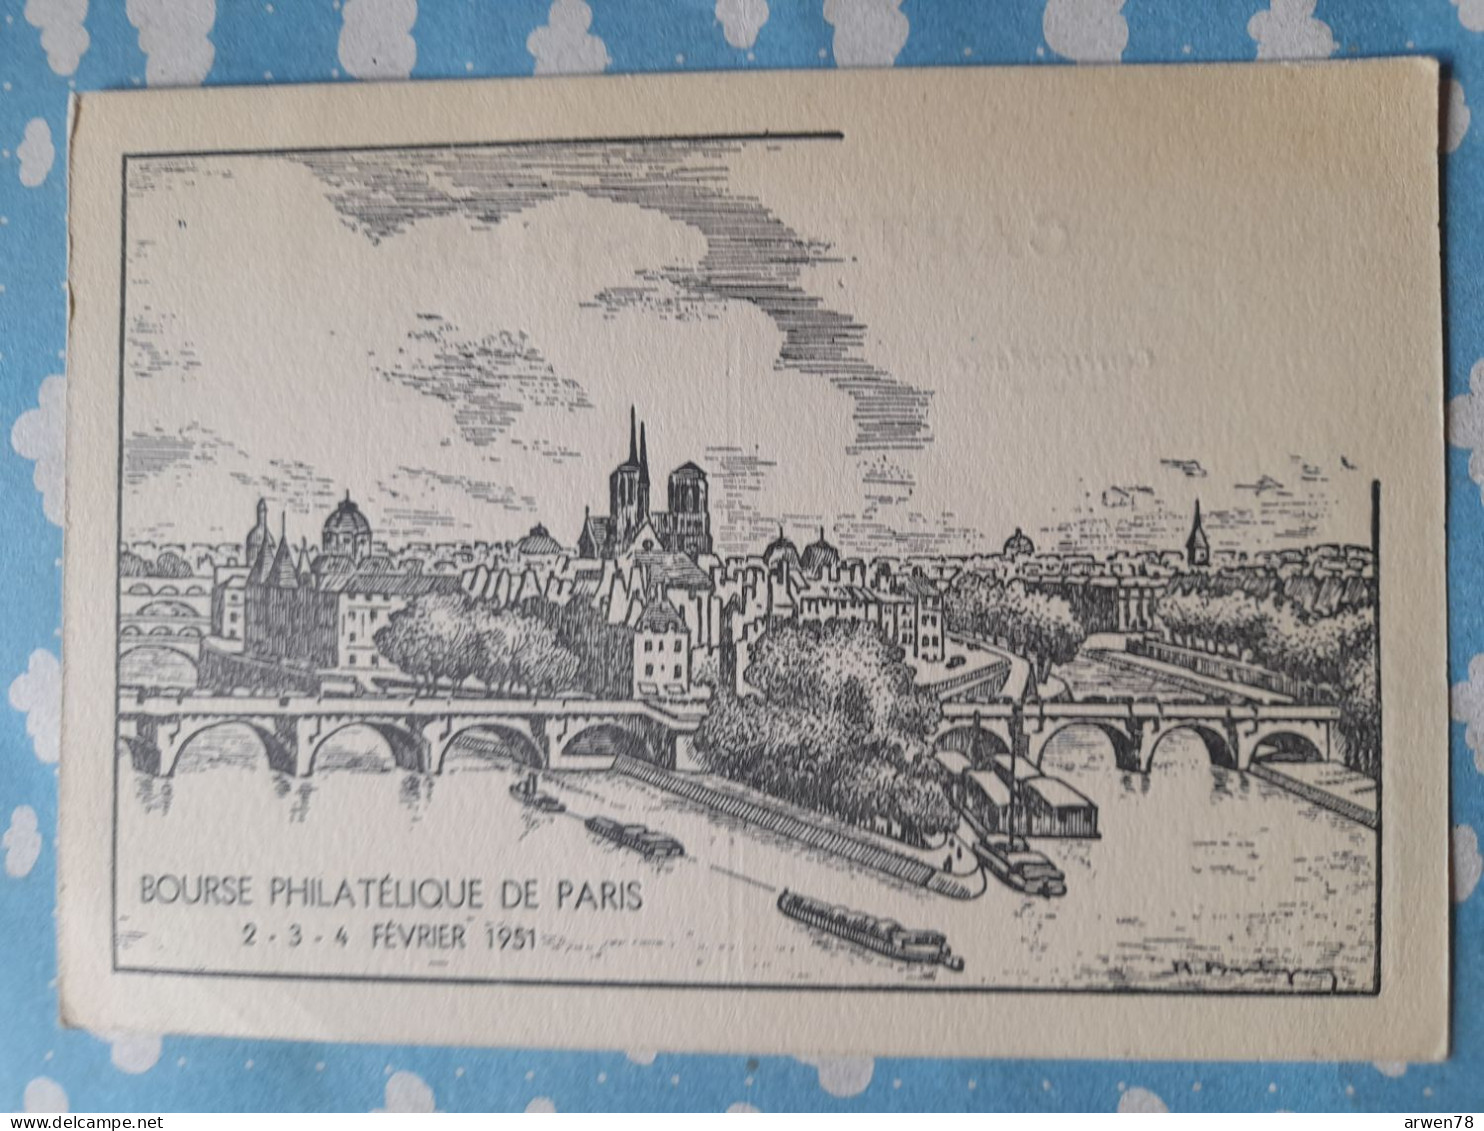 BOURSE PHILATELIQUE DE PARIS 2 . 3 . 4 FEVRIER 1951 - Correos & Carteros